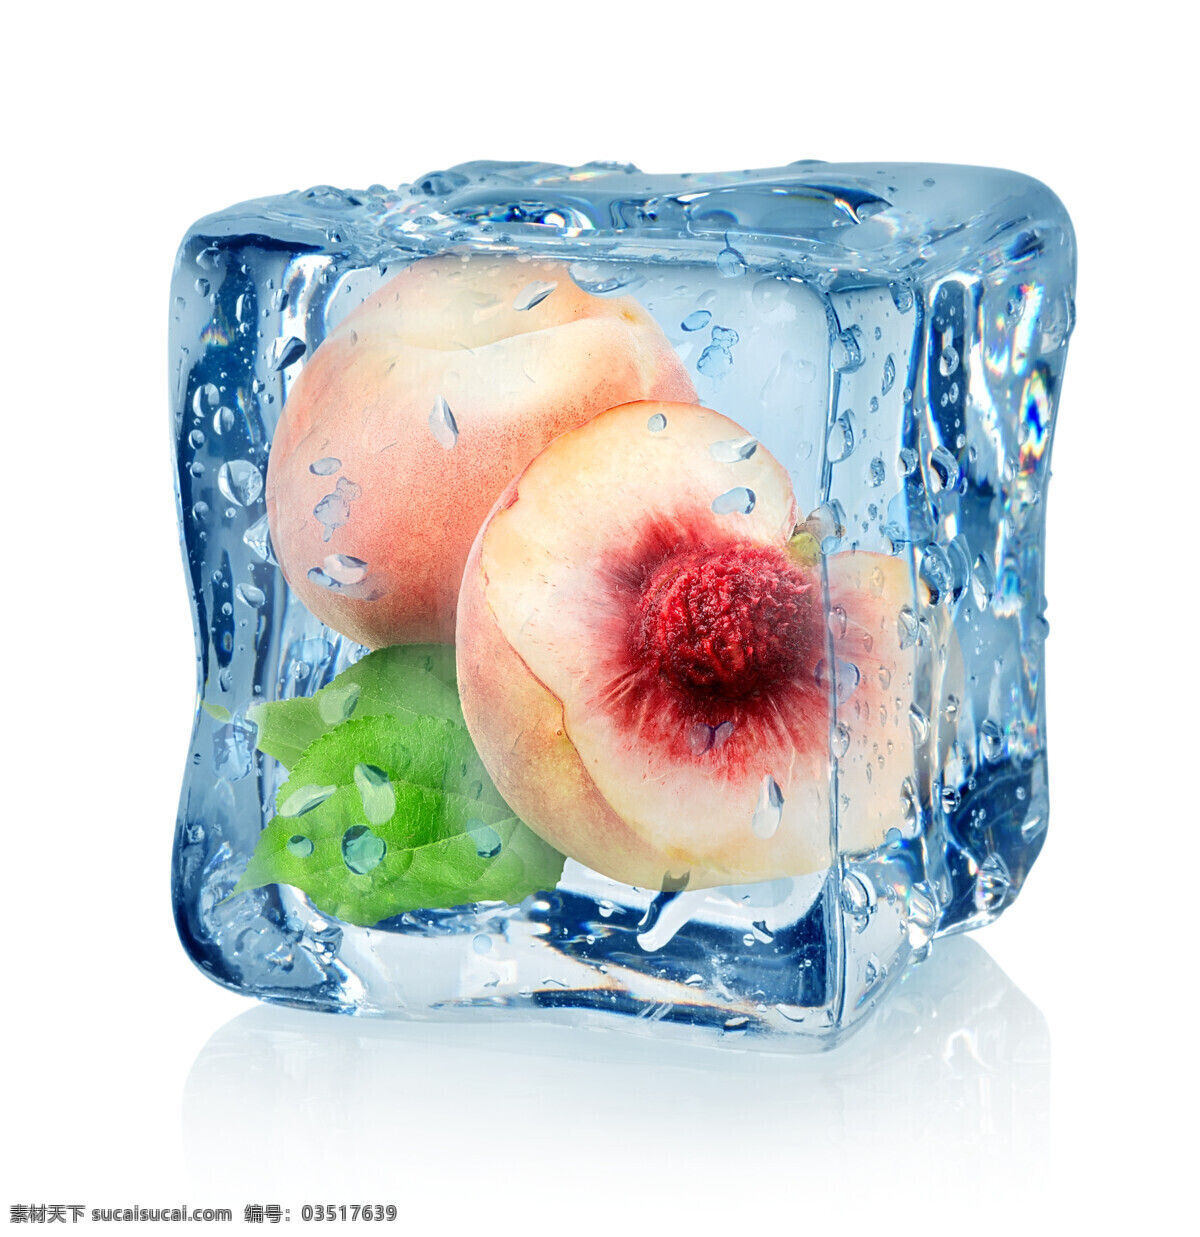 冰块 里 水蜜桃 桃子 果实 果子 水果 新鲜水果 水果背景 水果图片 餐饮美食